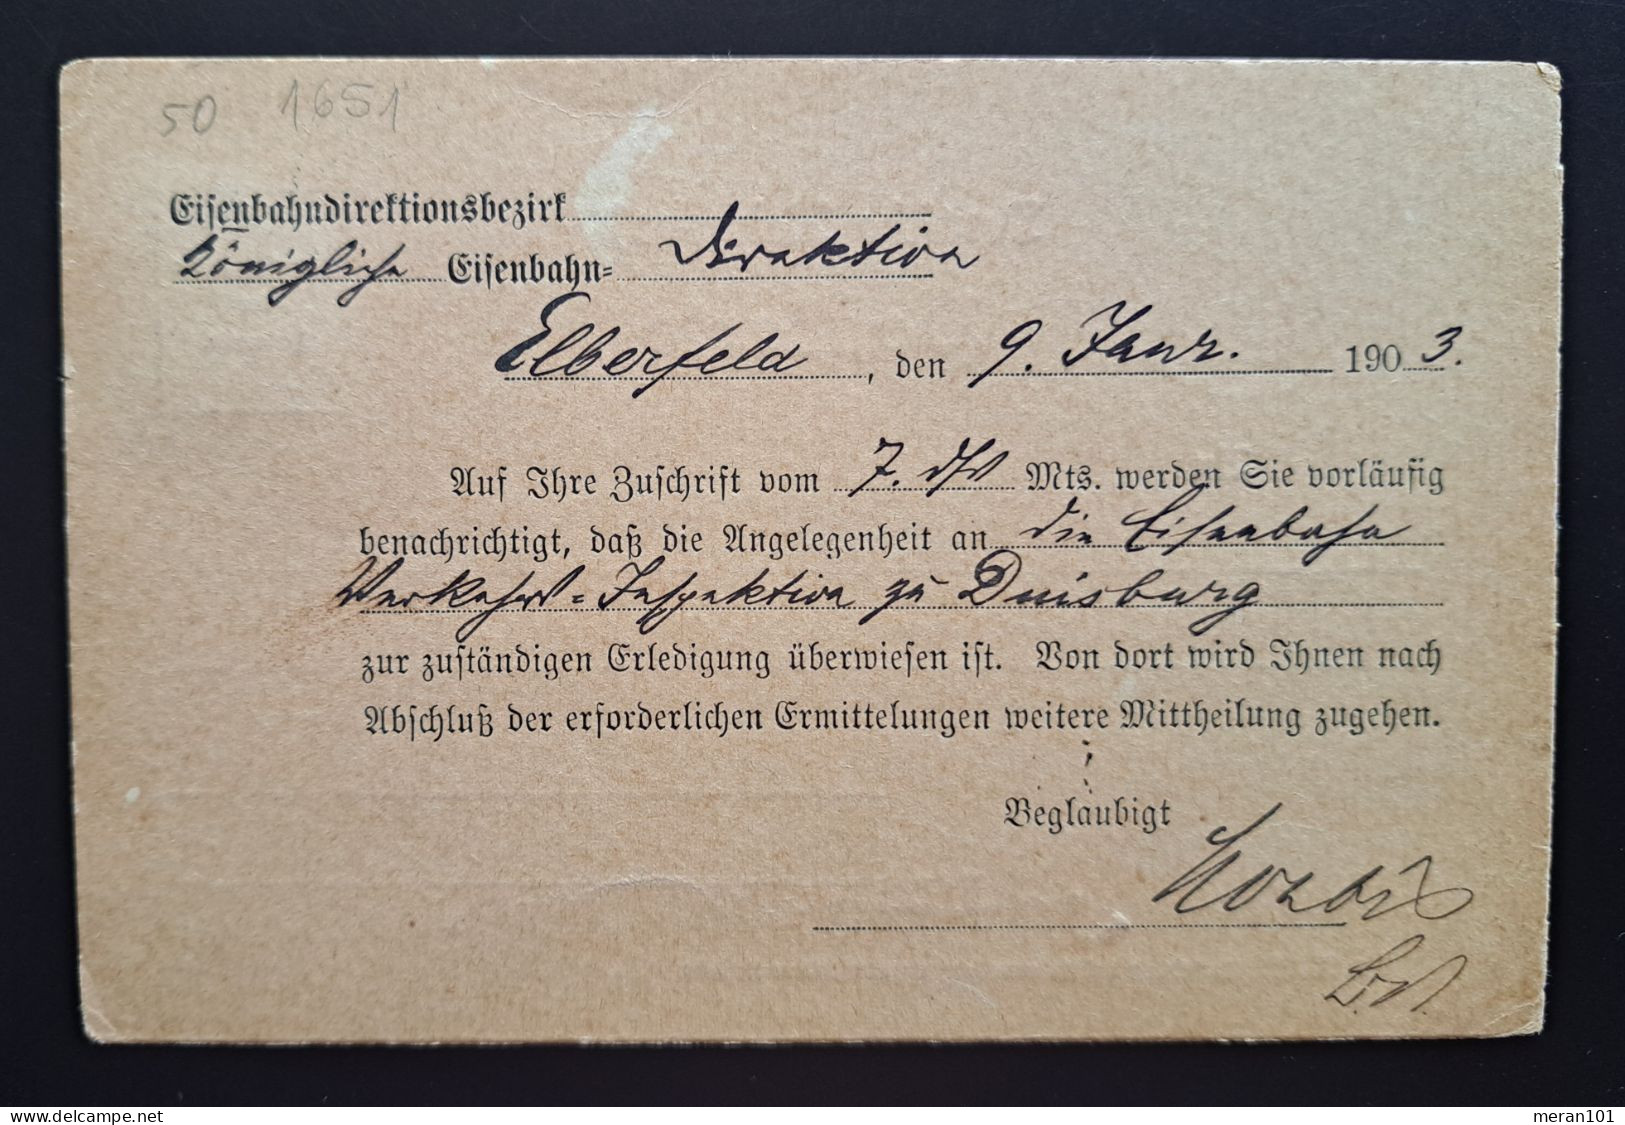 Dienst 1903, Eisenbahn Direktion Postkarte Mi 3 Elberfeld 9.1. Sehr Frühes Datum - Service